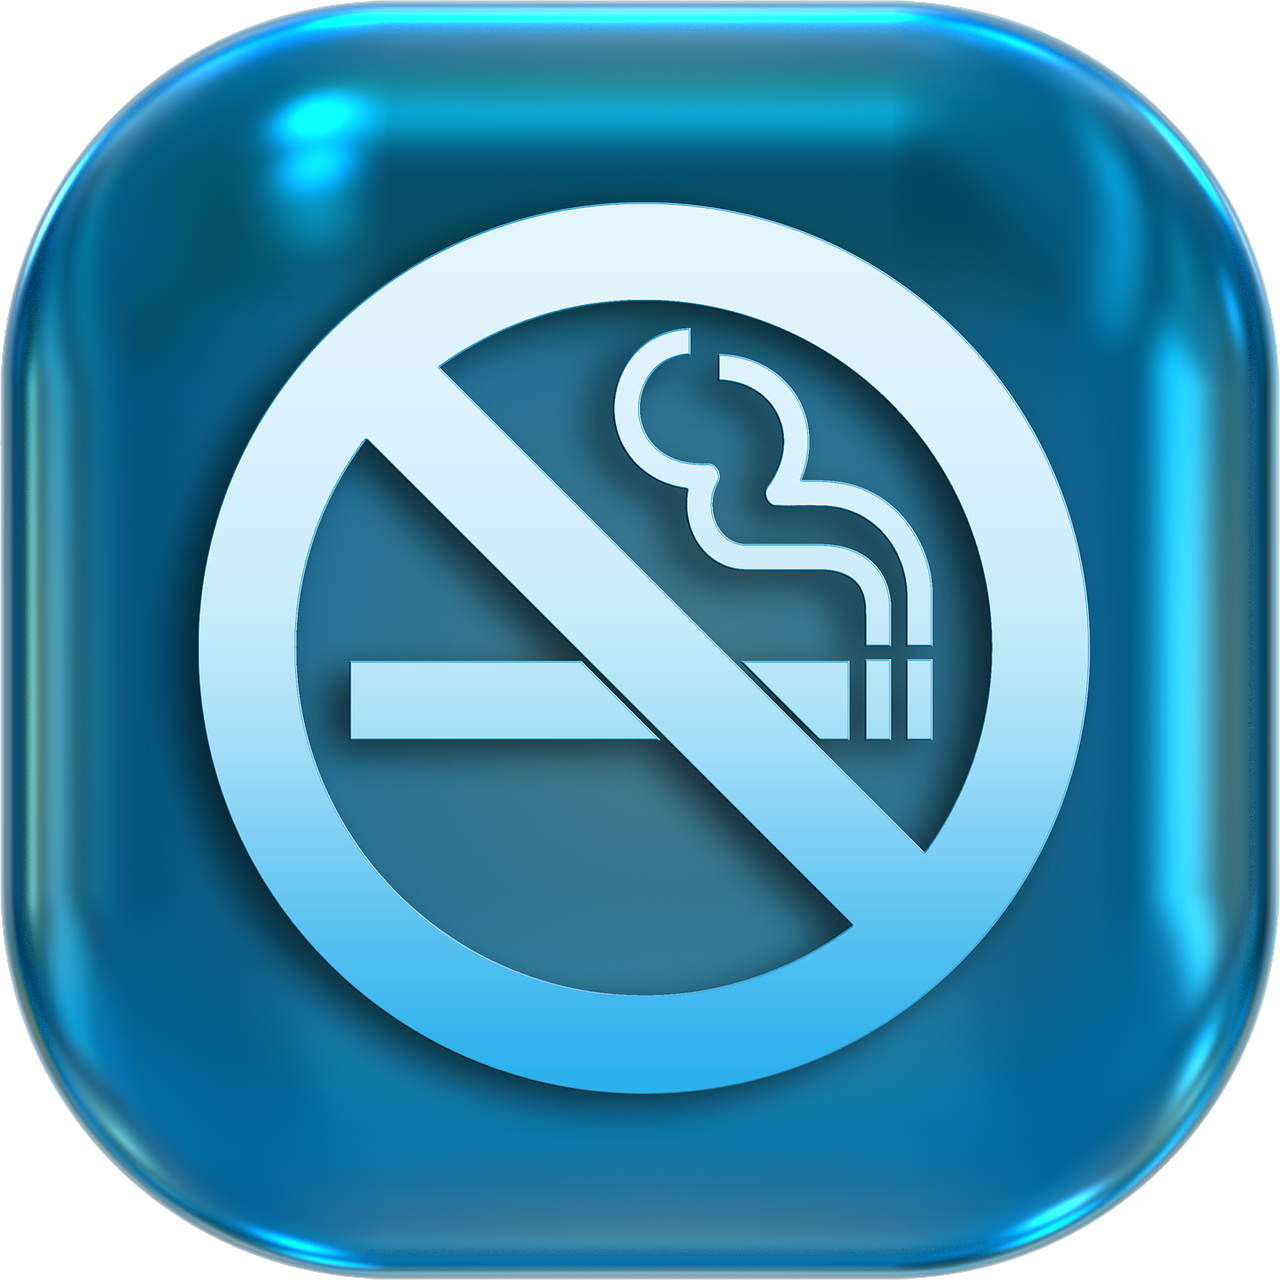 Không hút thuốc